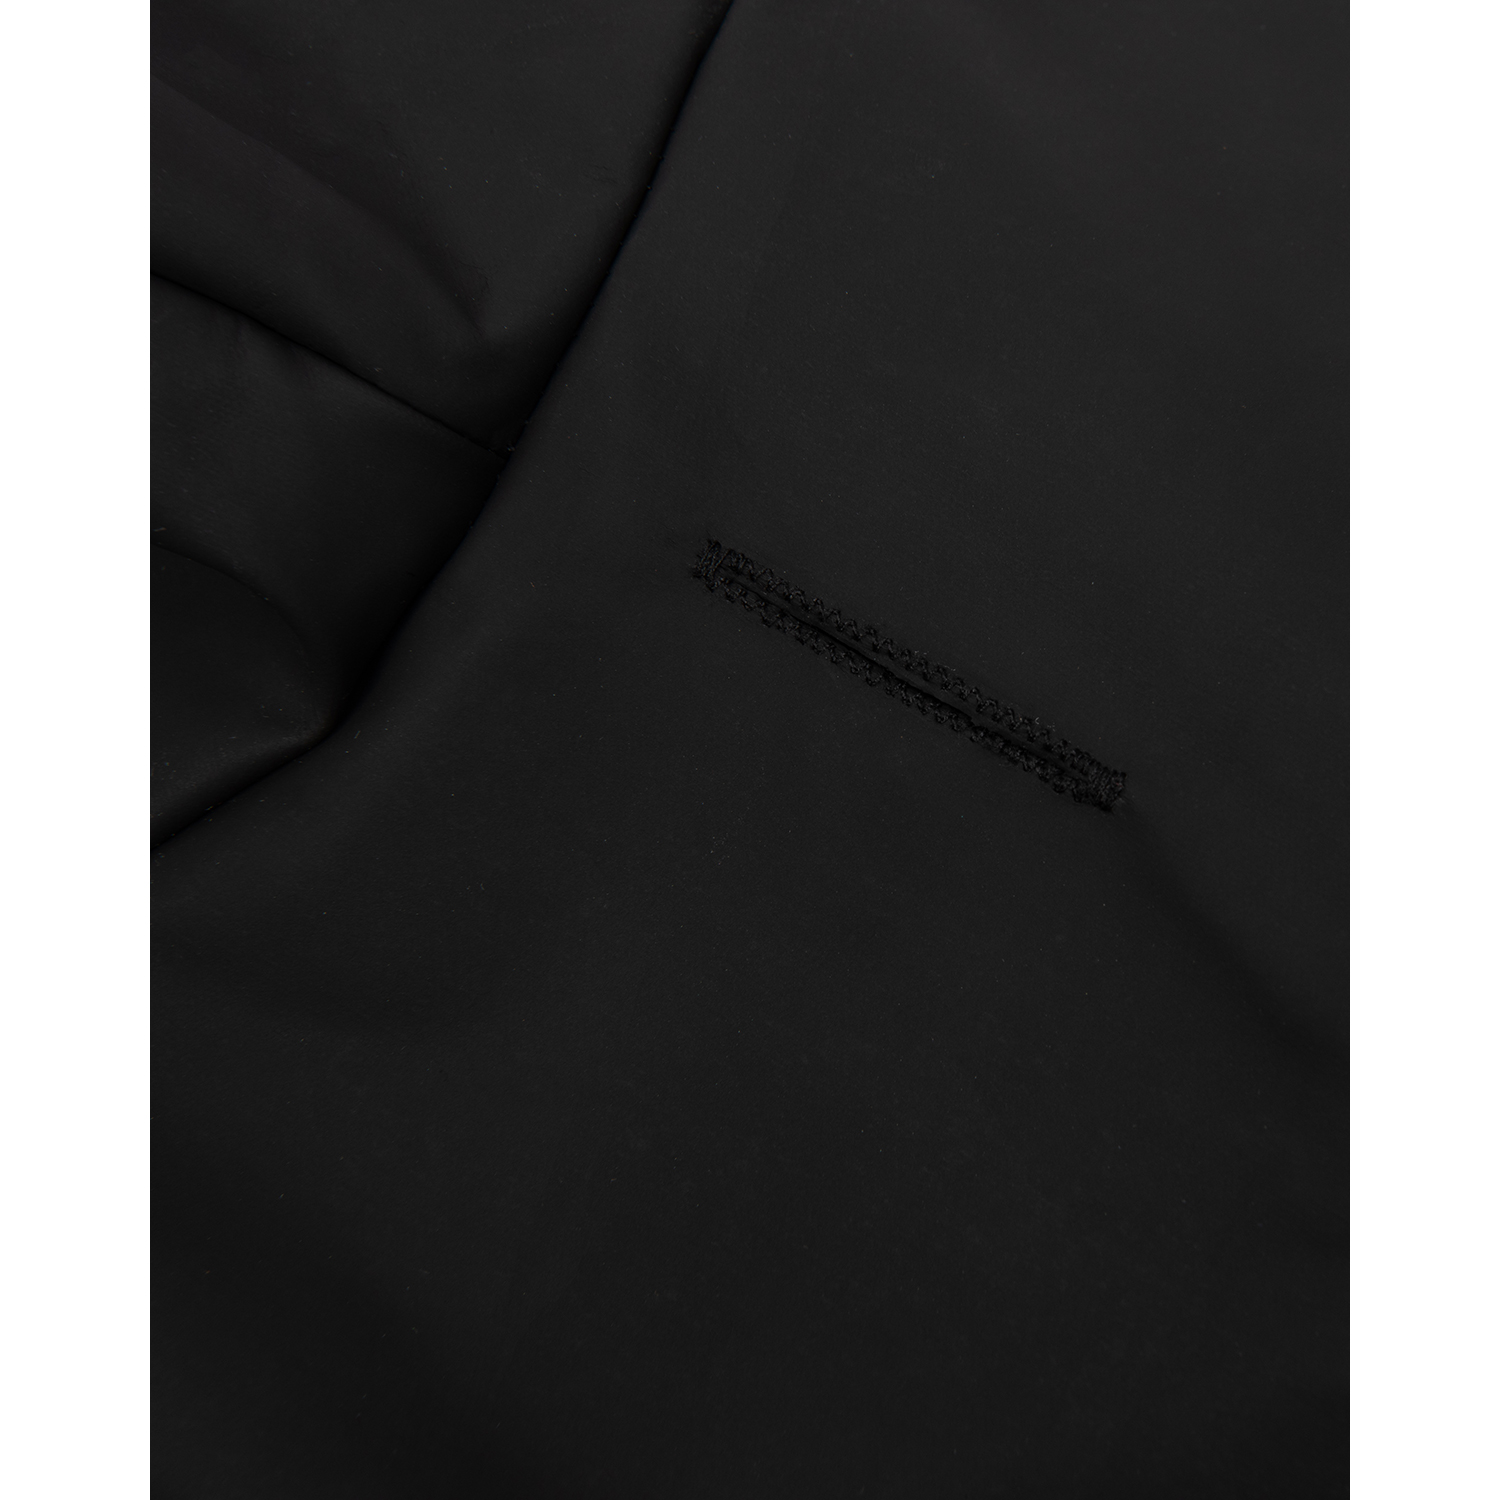 Дождевик-куртка для собак Zoozavr чёрный 35 - фото 5